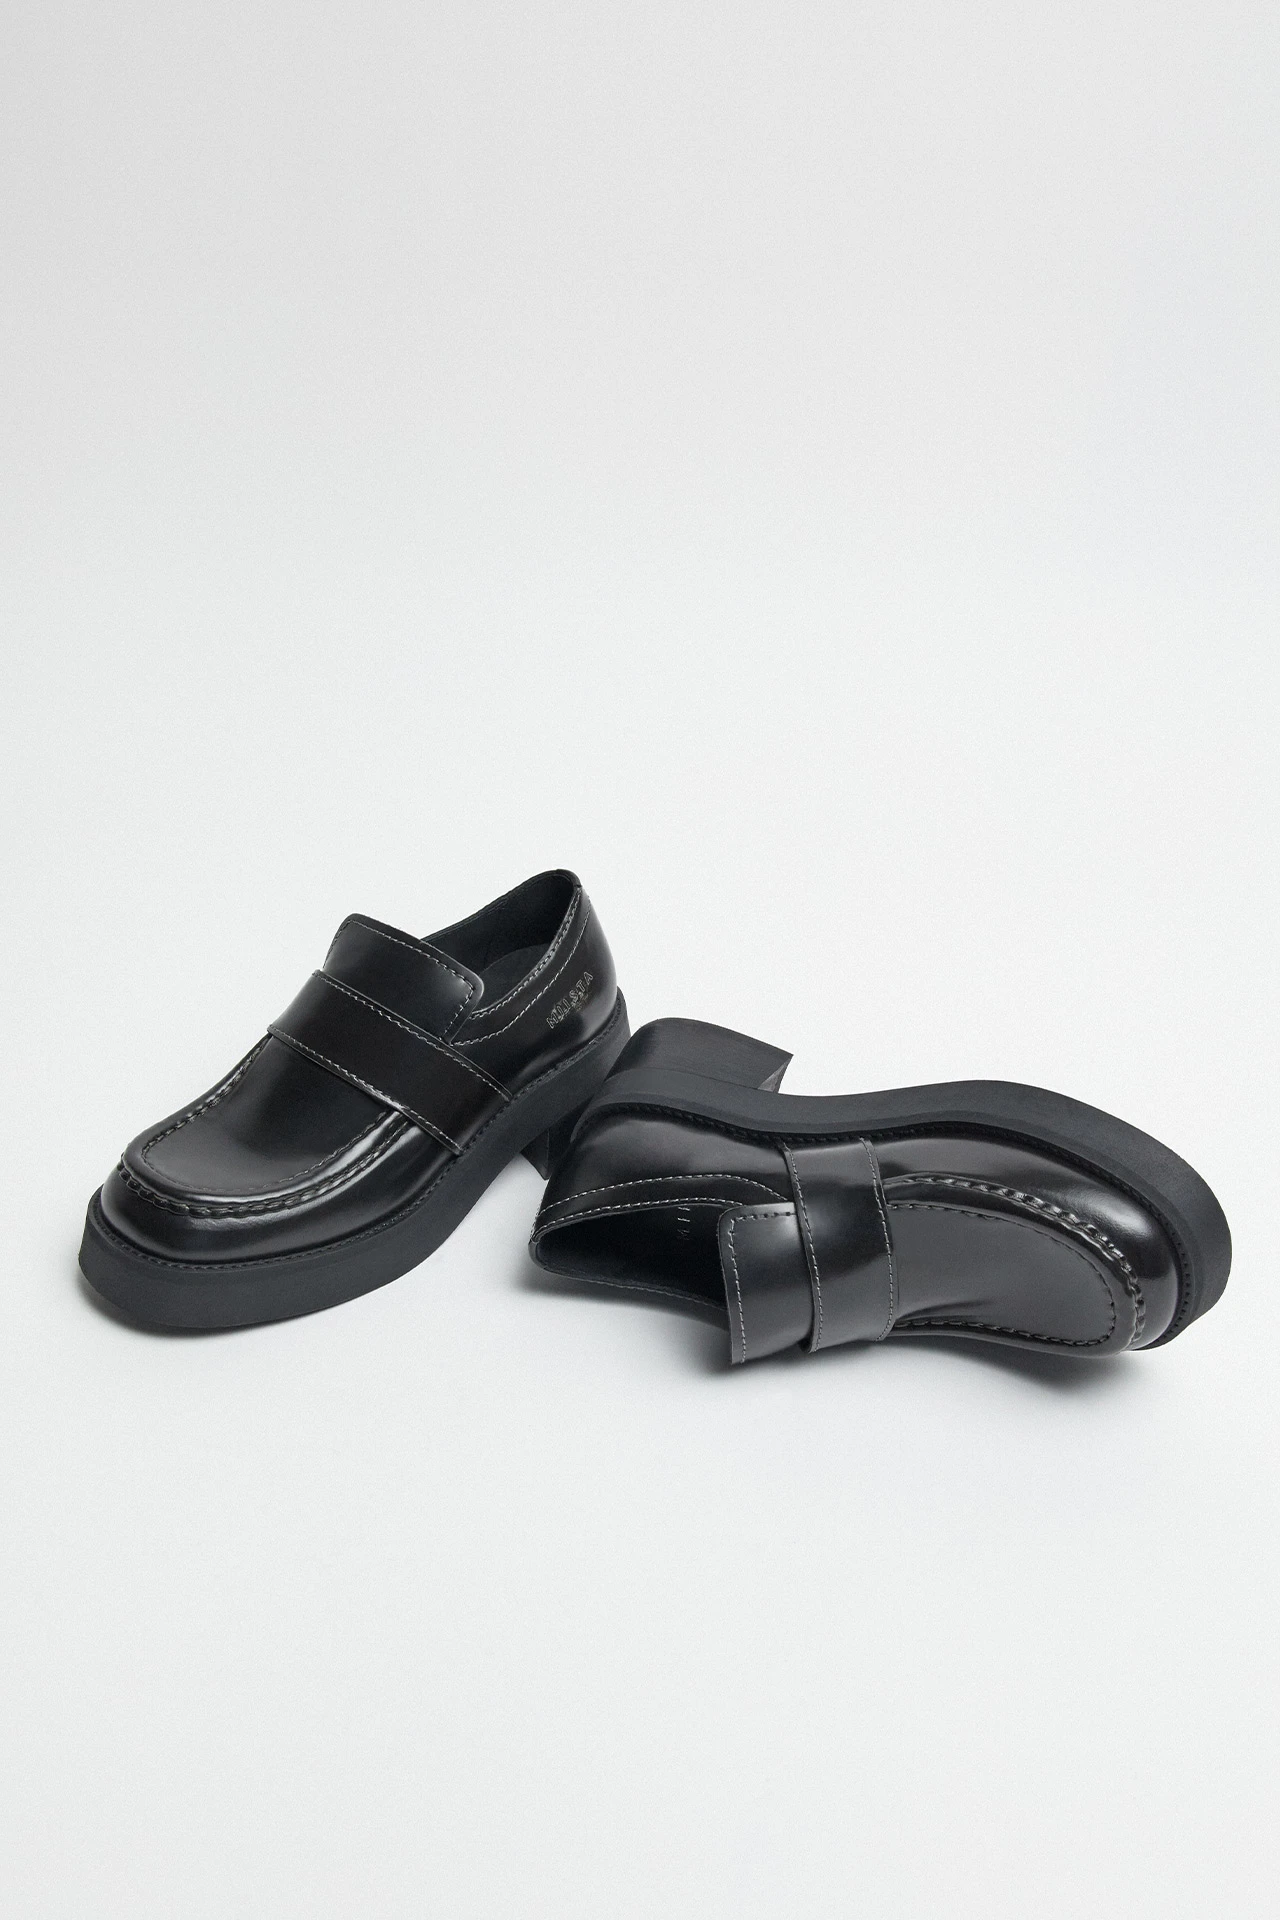 E8-lib-black-loafers-02